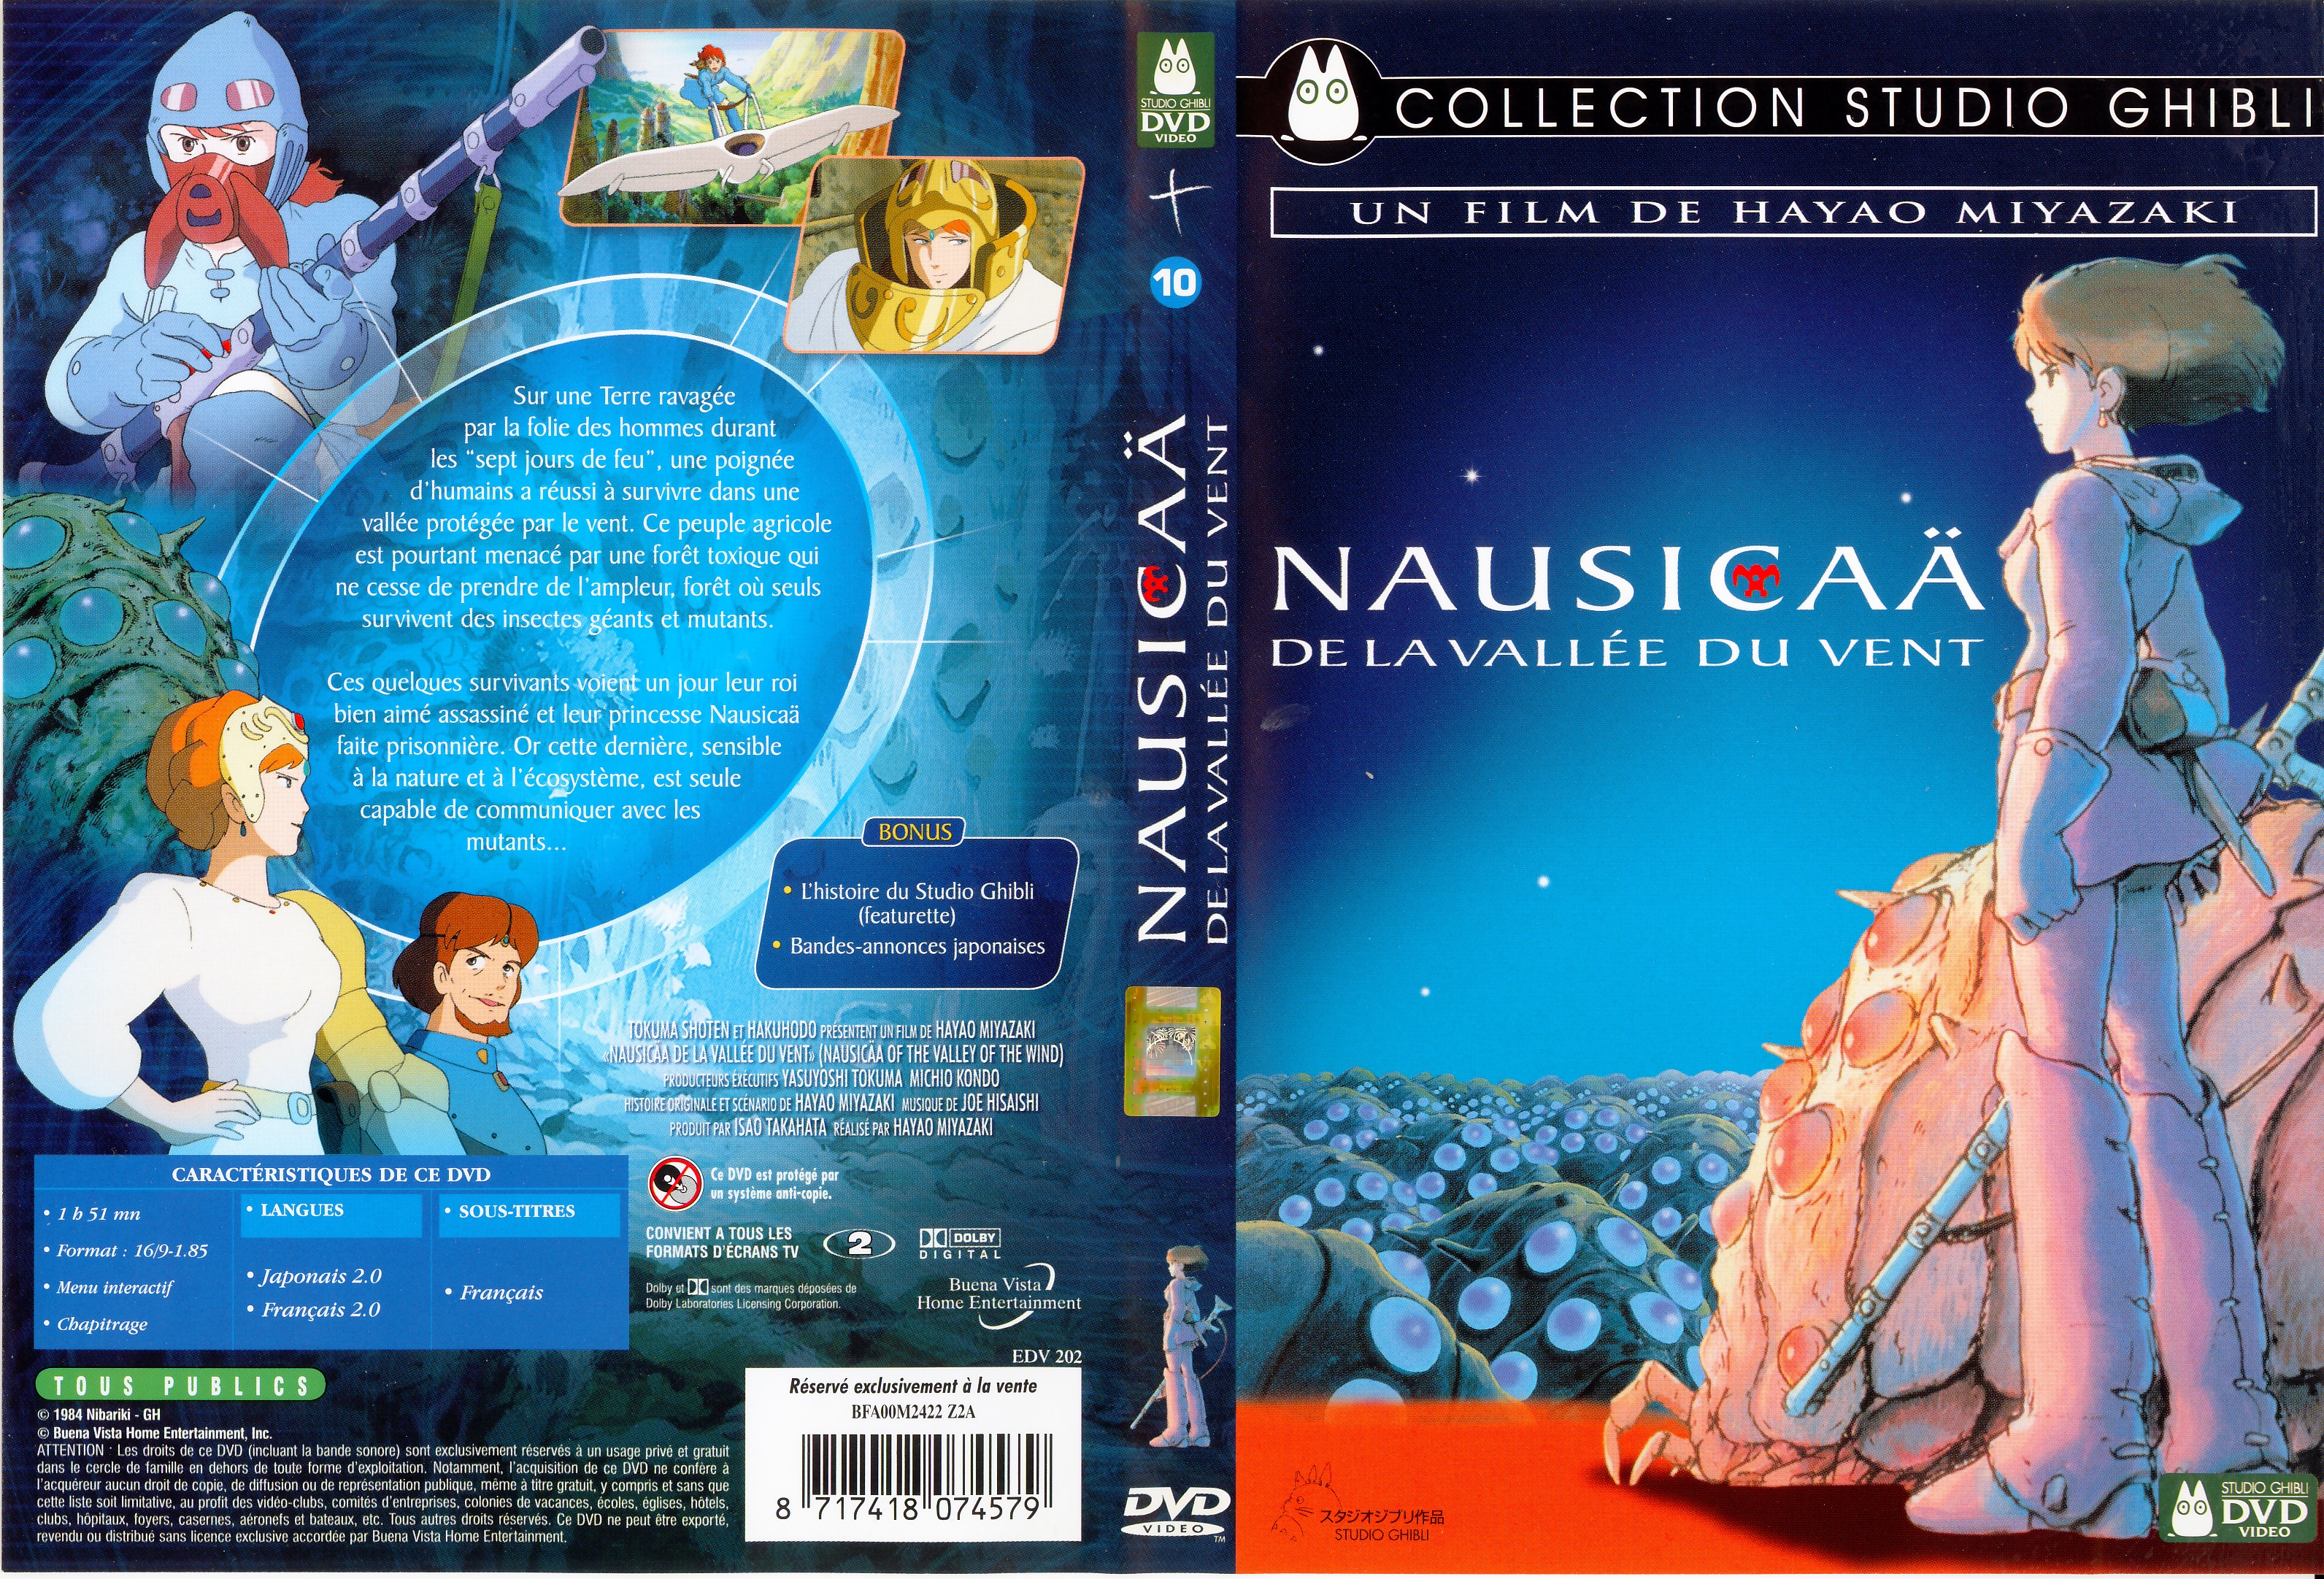 Jaquette DVD Nausicaa de la valle du vent v3